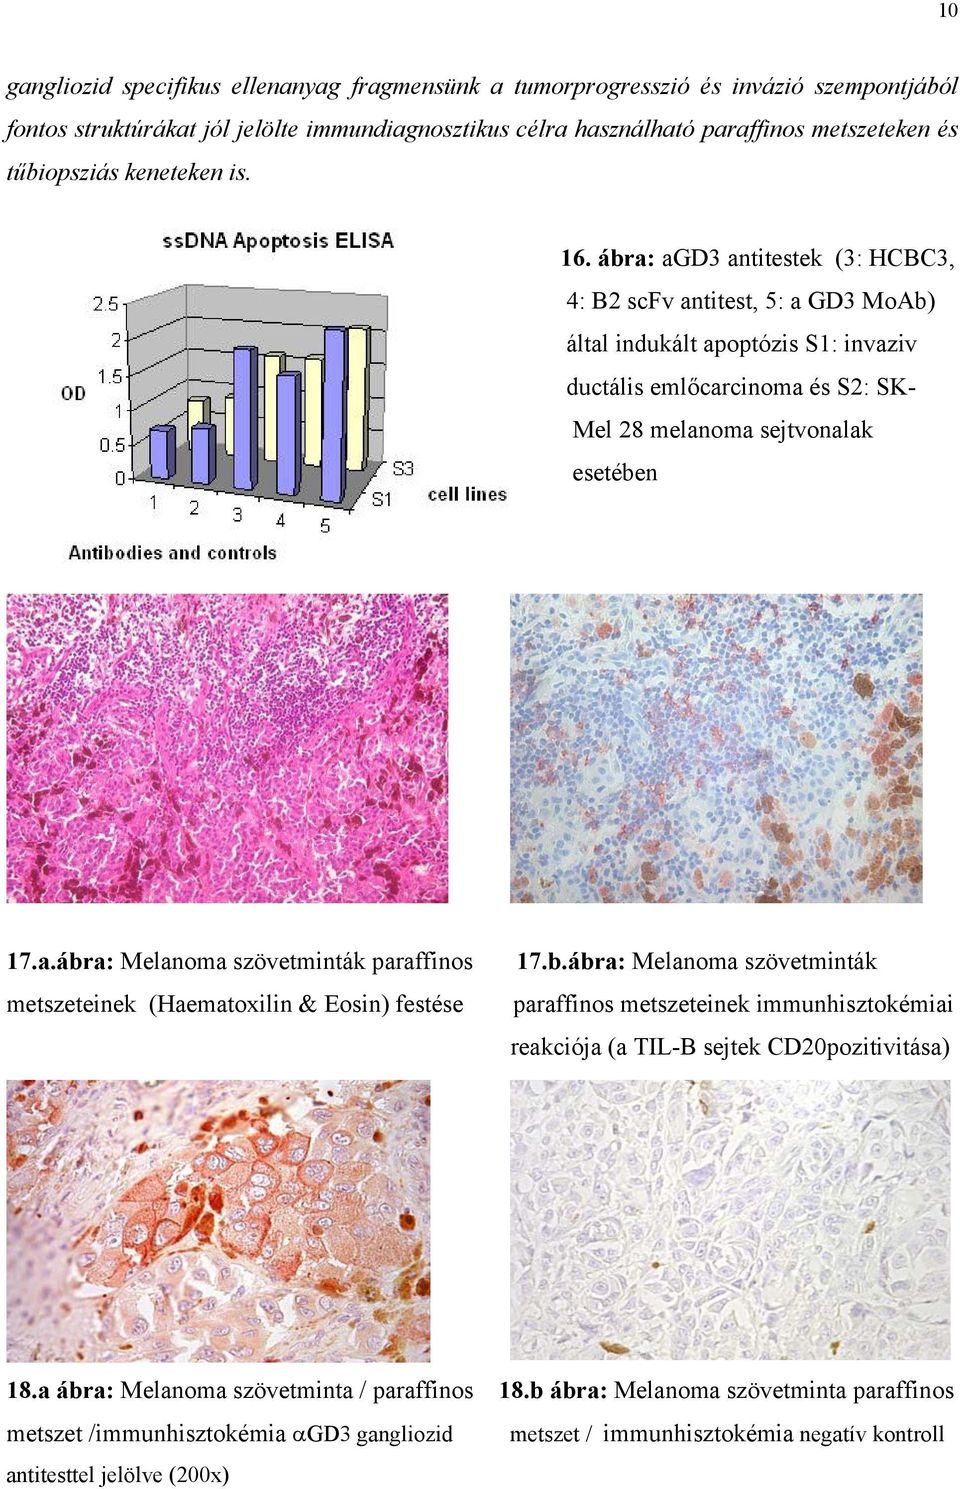 b.ábra: Melanoma szövetminták paraffinos metszeteinek immunhisztokémiai reakciója (a TIL-B sejtek CD20pozitivitása) 18.a ábra: Melanoma szövetminta / paraffinos 18.